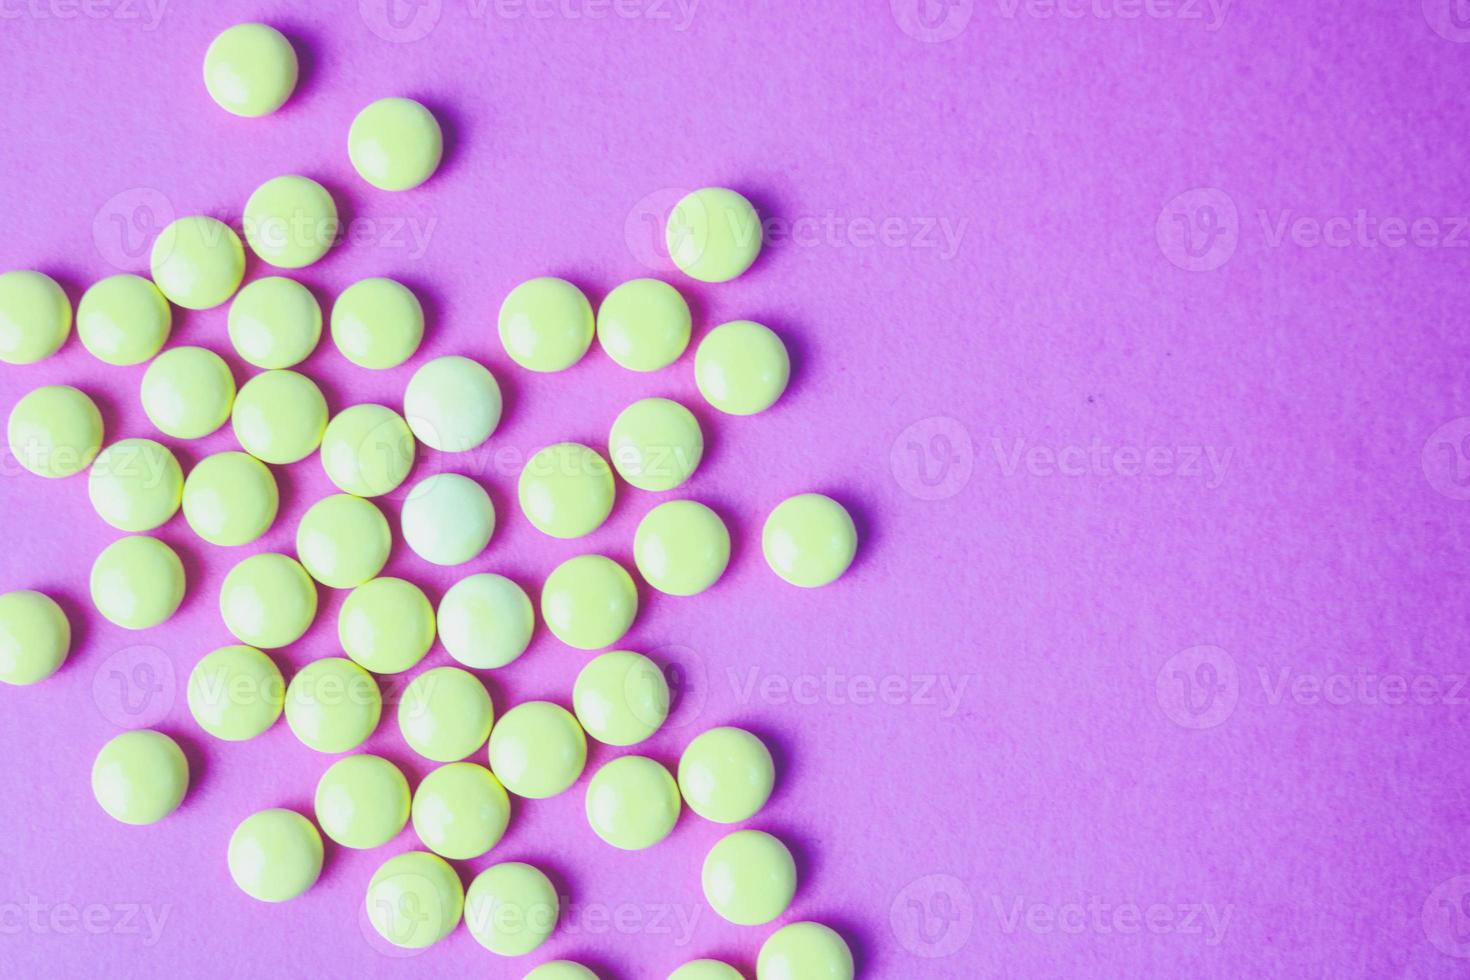 petites pilules rondes pharmaceutiques médicales jaune orange belles, vitamines, médicaments, antibiotiques sur fond violet rose, texture. médecine conceptuelle, soins de santé. mise à plat, vue de dessus photo